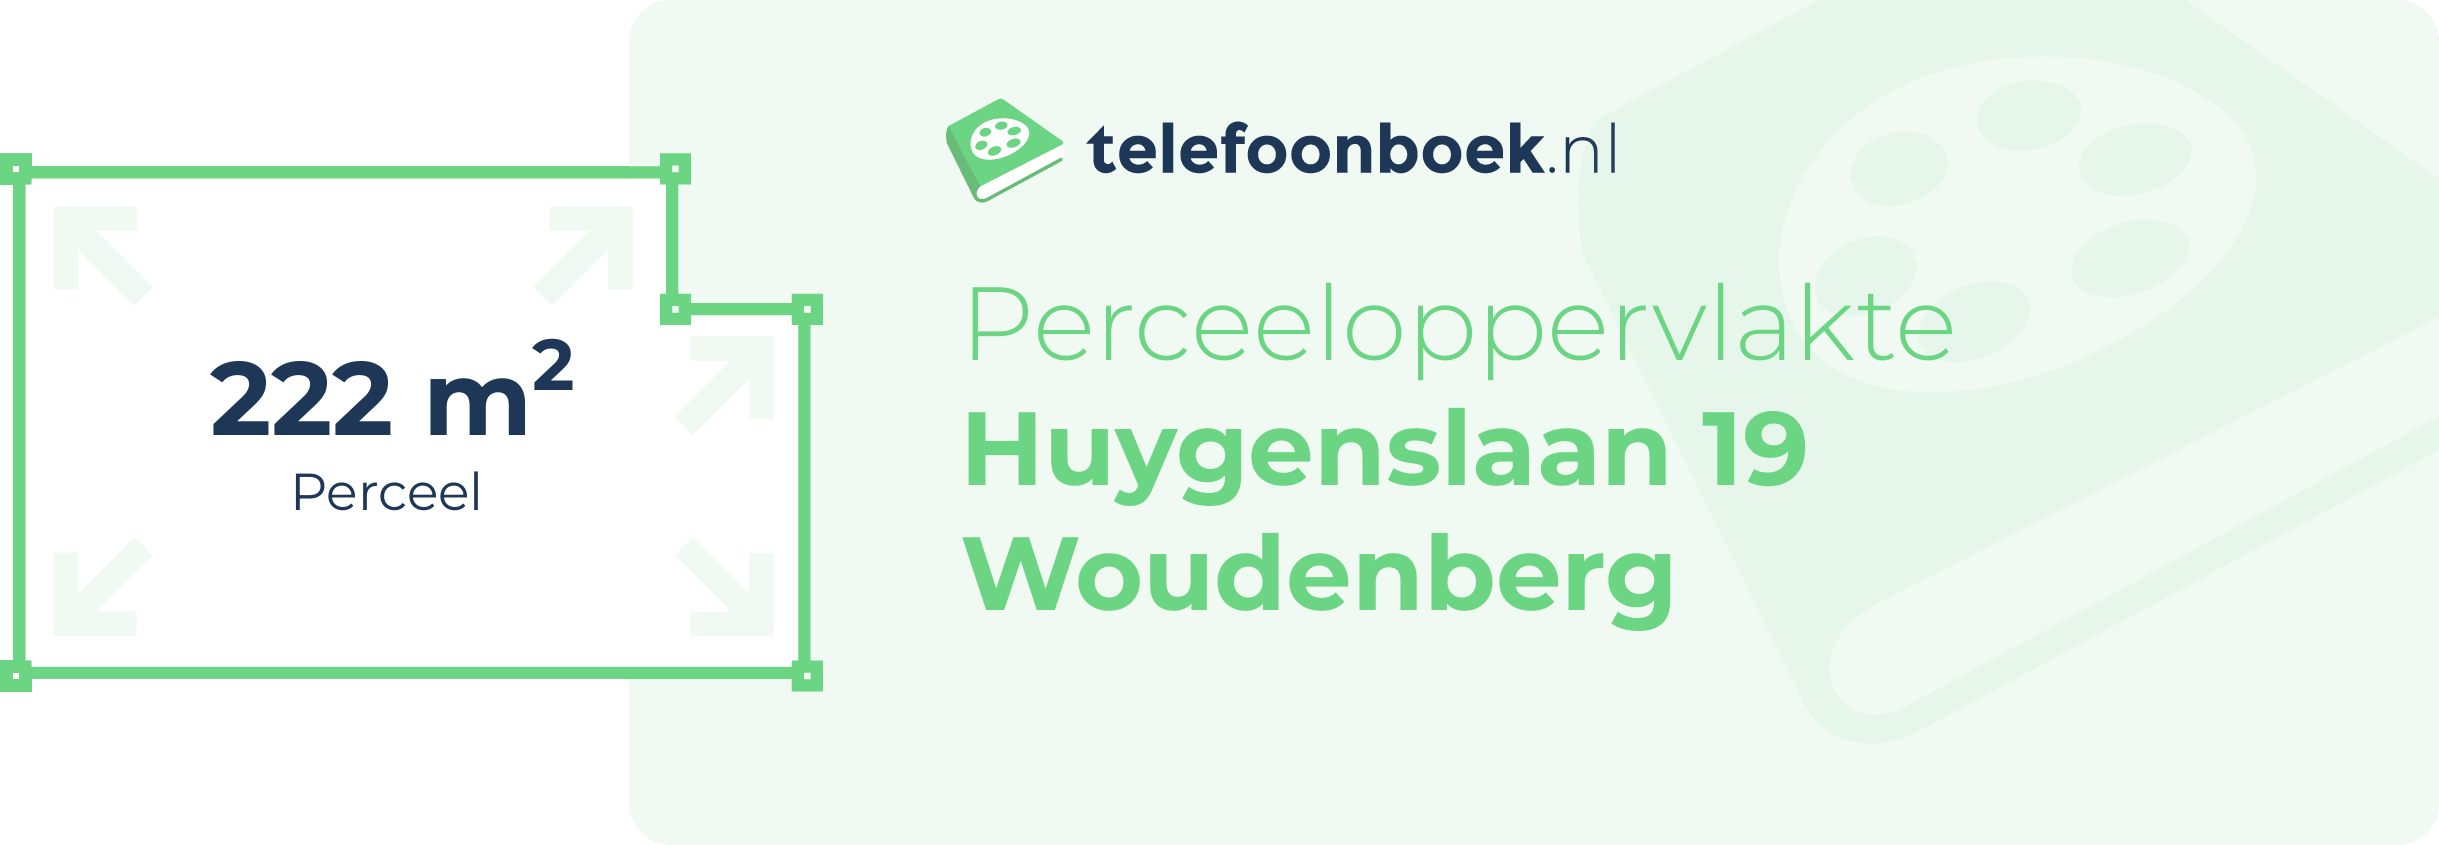 Perceeloppervlakte Huygenslaan 19 Woudenberg